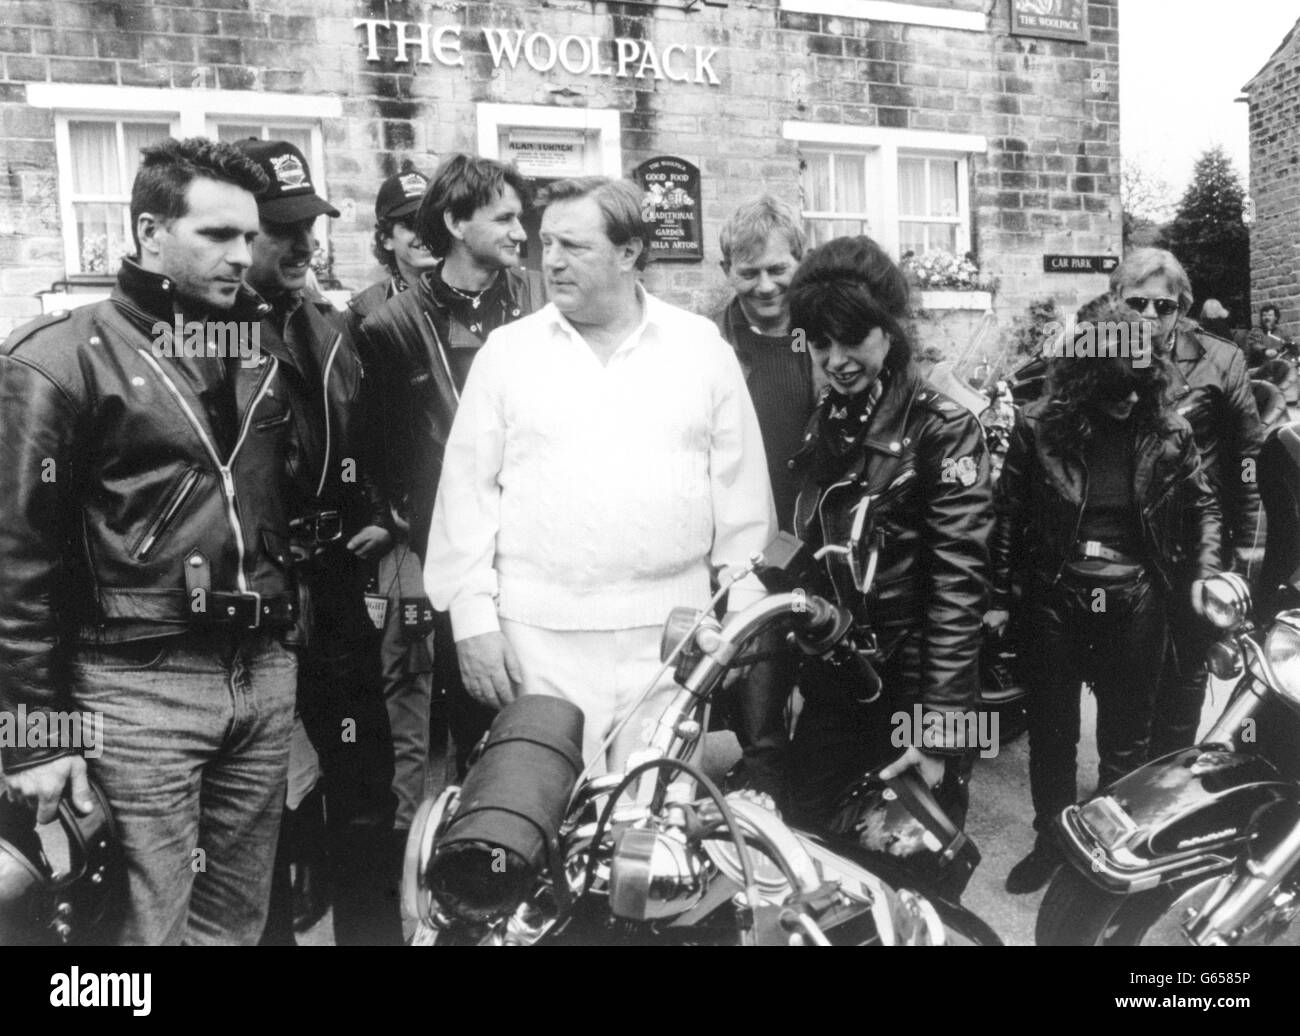 Alan Turner (gespielt von Richard Thorp) begegnet einem Haufen von Harley's Angels, als er das Woolpack für das Fete auf Home Farm während einer Episode von Yorkshire Television's Emmerdale verlässt. Stockfoto